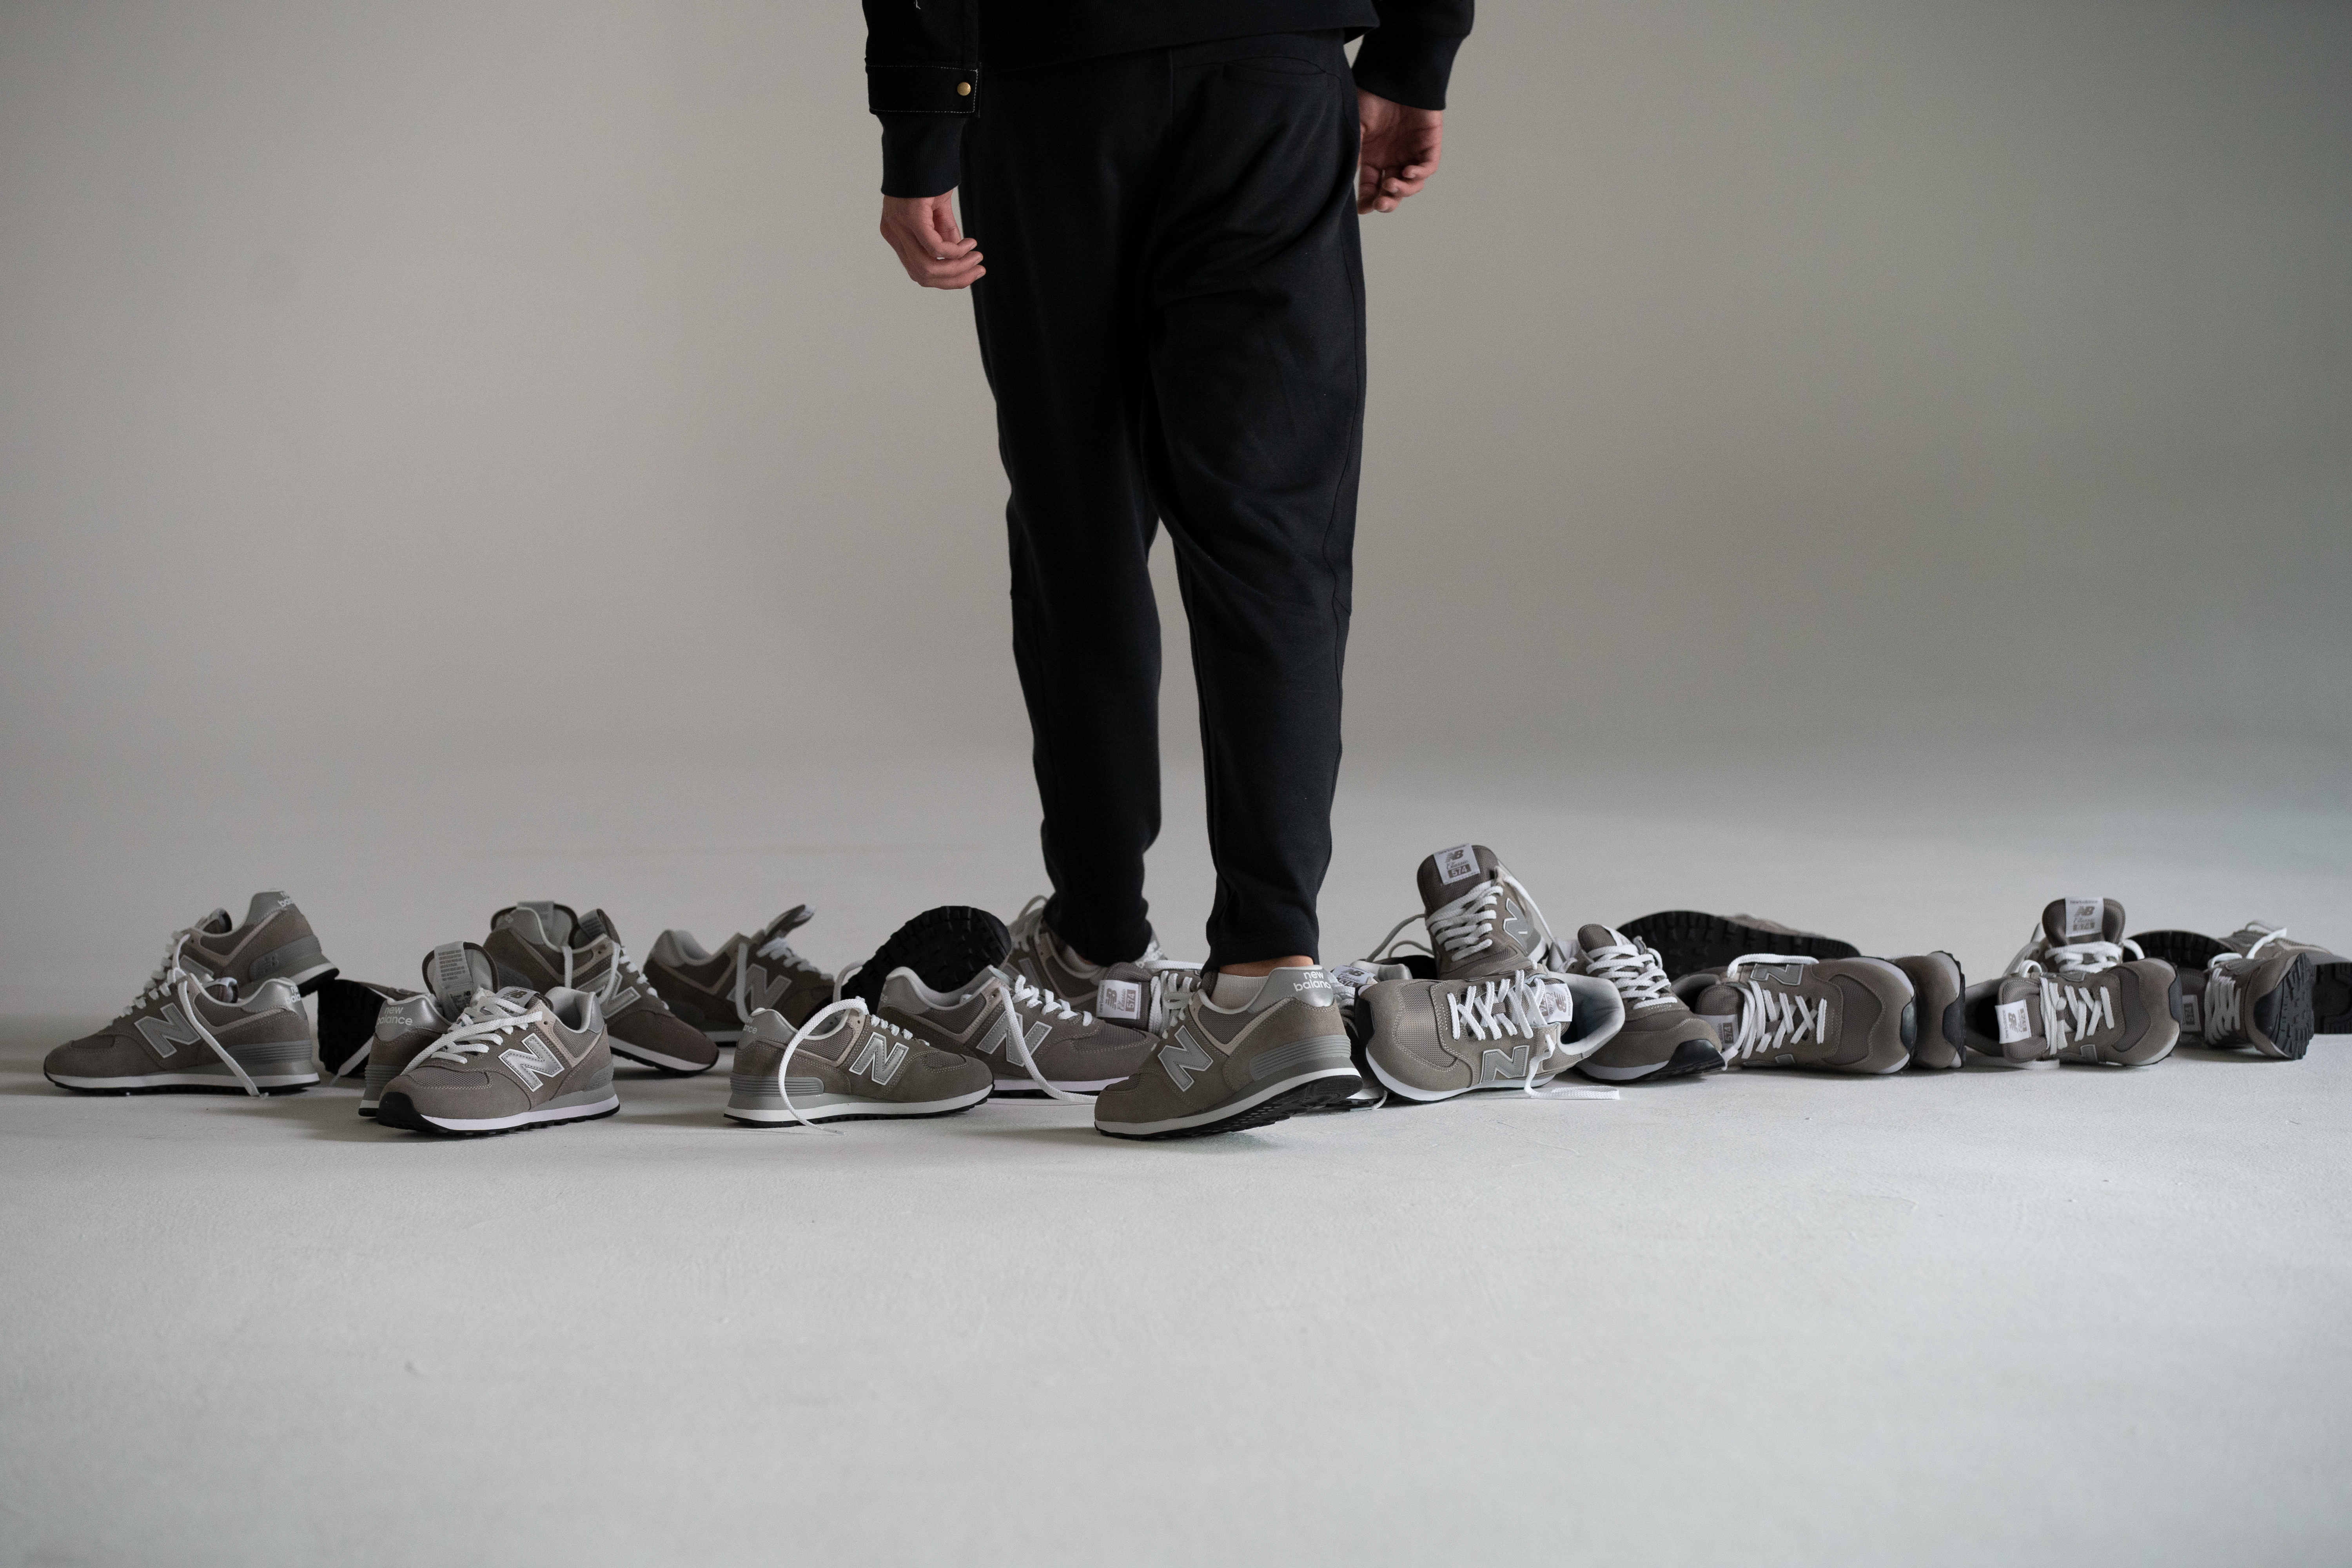 New Balance świętuje Grey Day w hołdzie swoim ikonicznym modelom obuwia w kolorze szarym